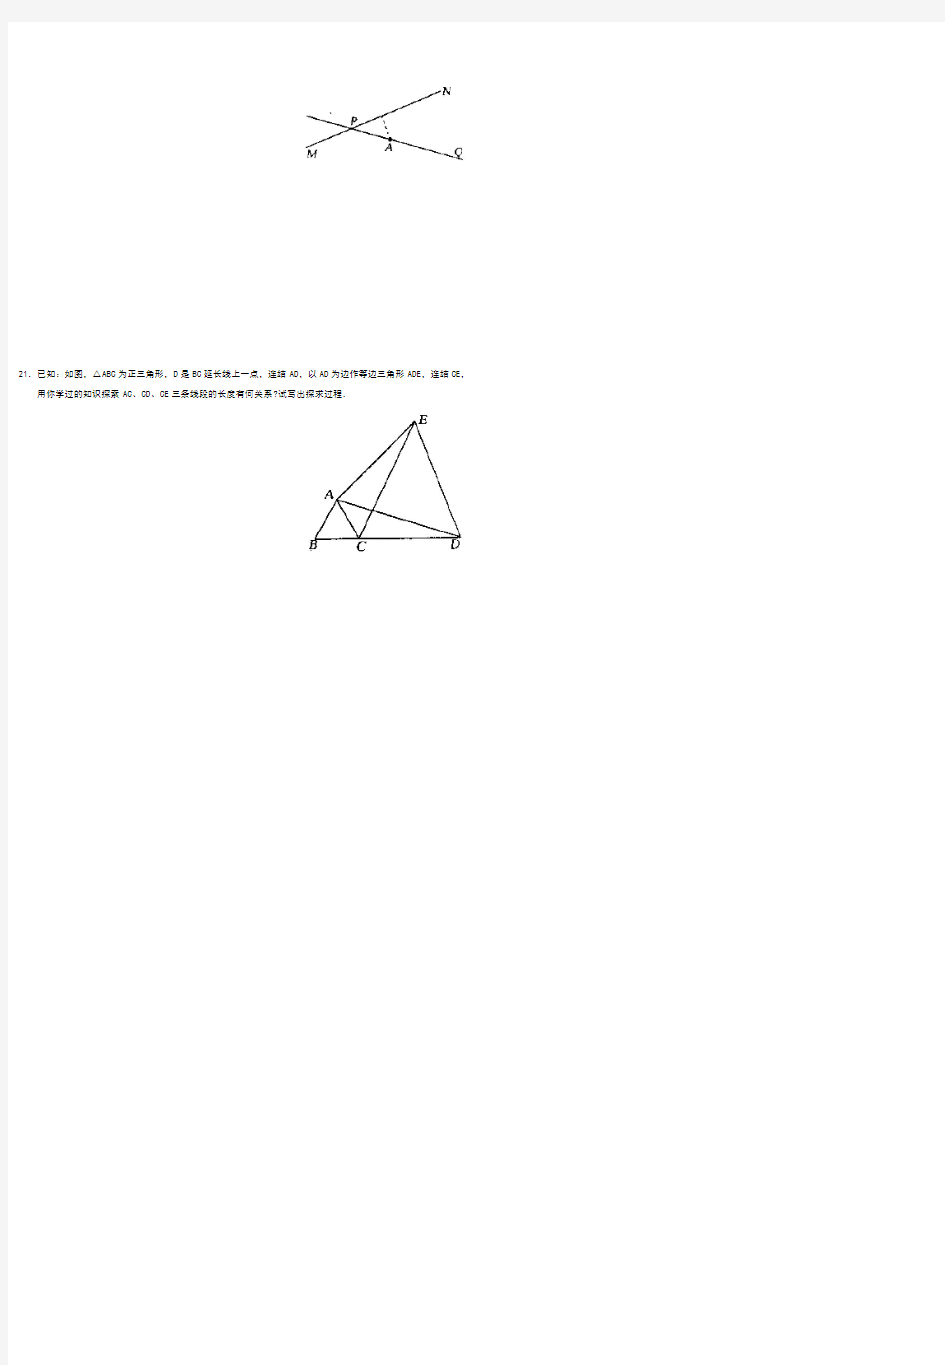 《等腰三角形》单元测试题 (1)